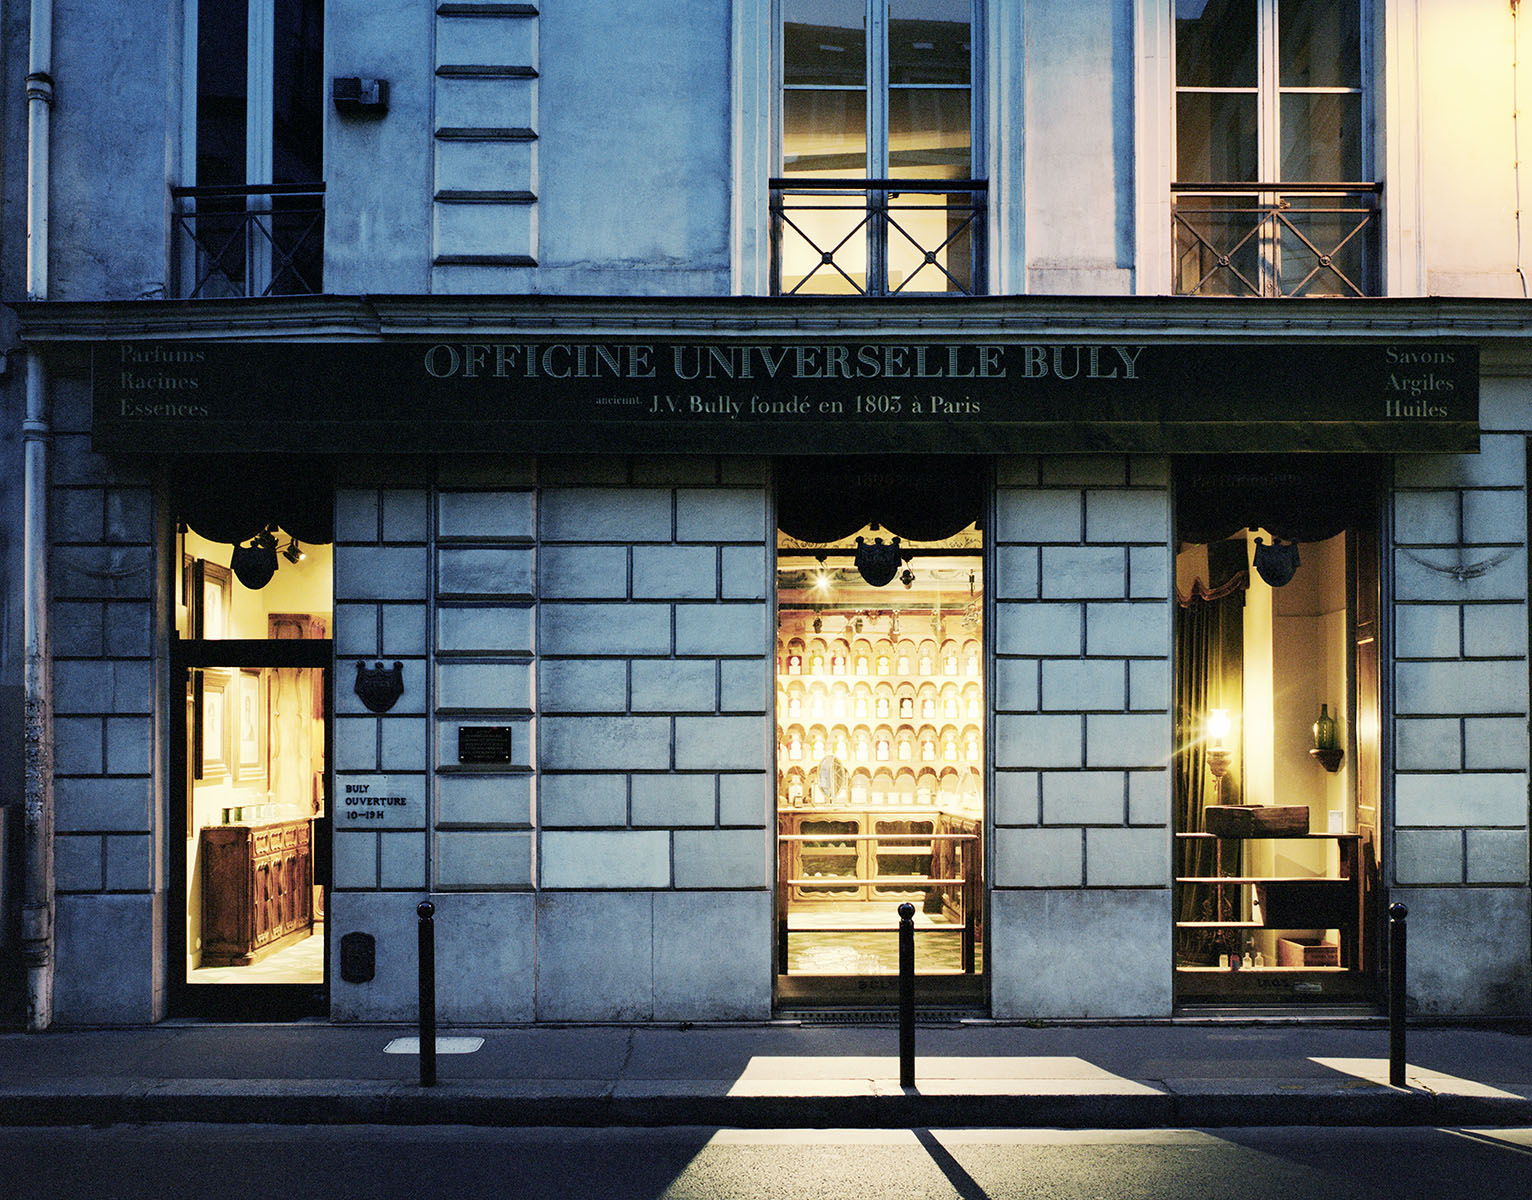 Officine Universelle Buly 1803, Paris